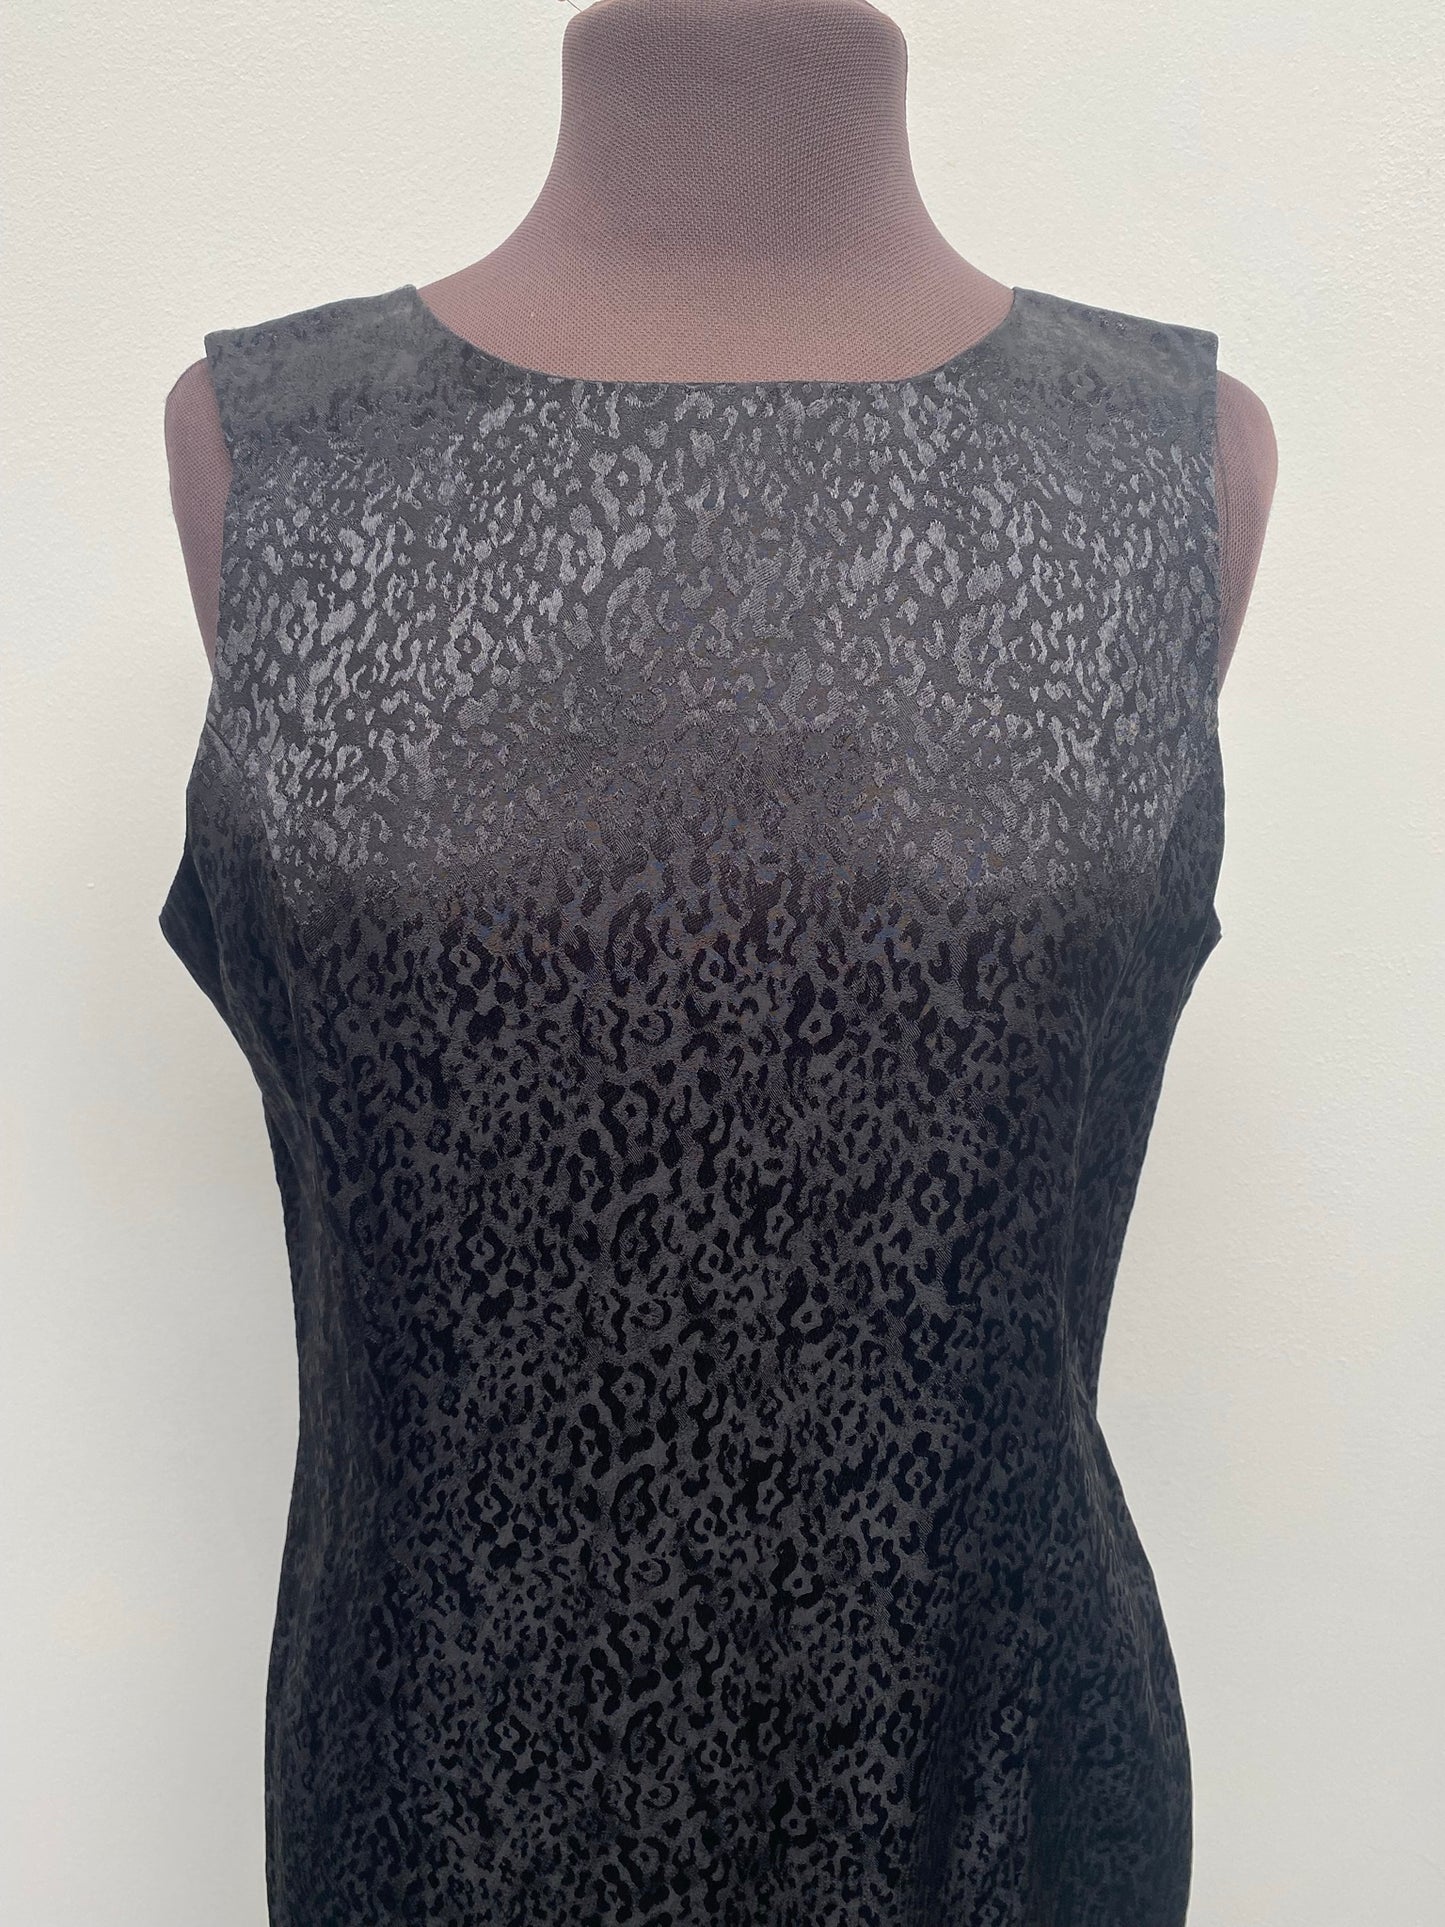 Vintage Black Dress size 14-16